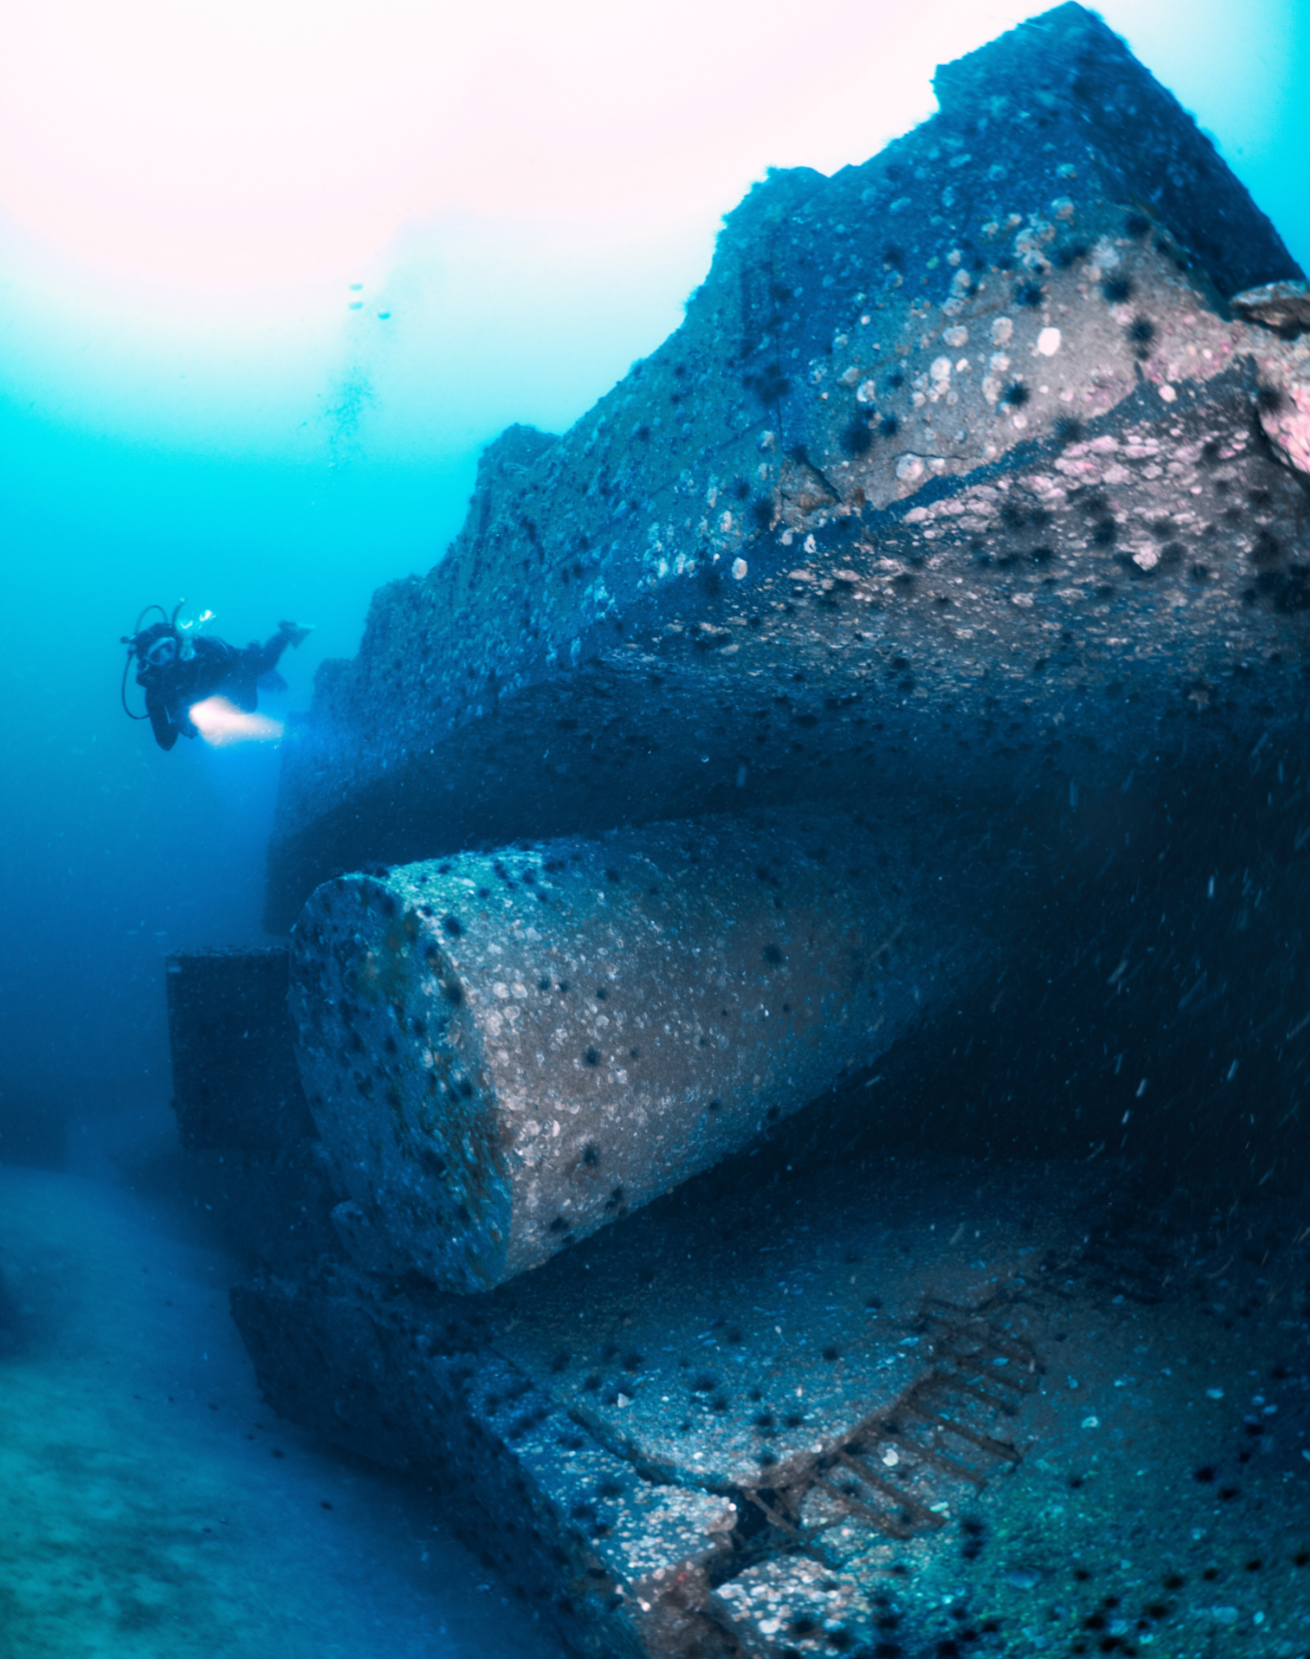 A scuba diver swimming under a large concrete structure.